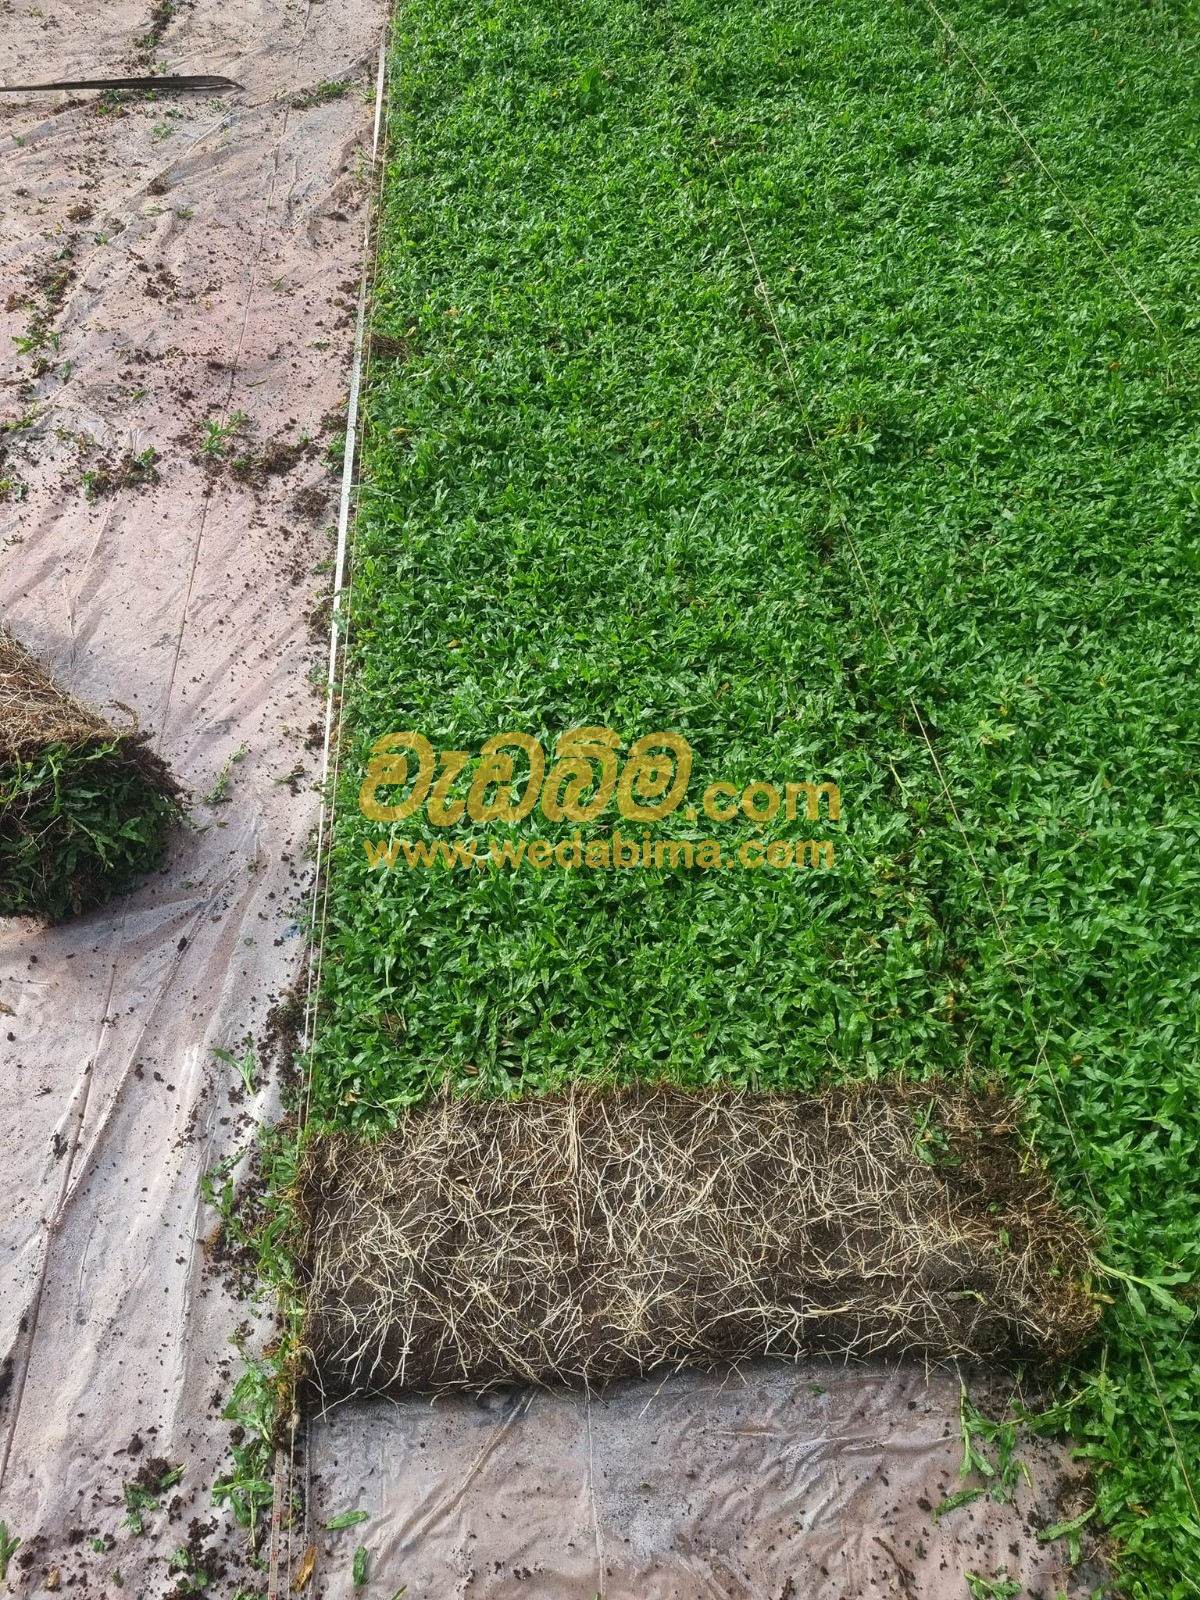 Malaysian grass supplier in sri lanka